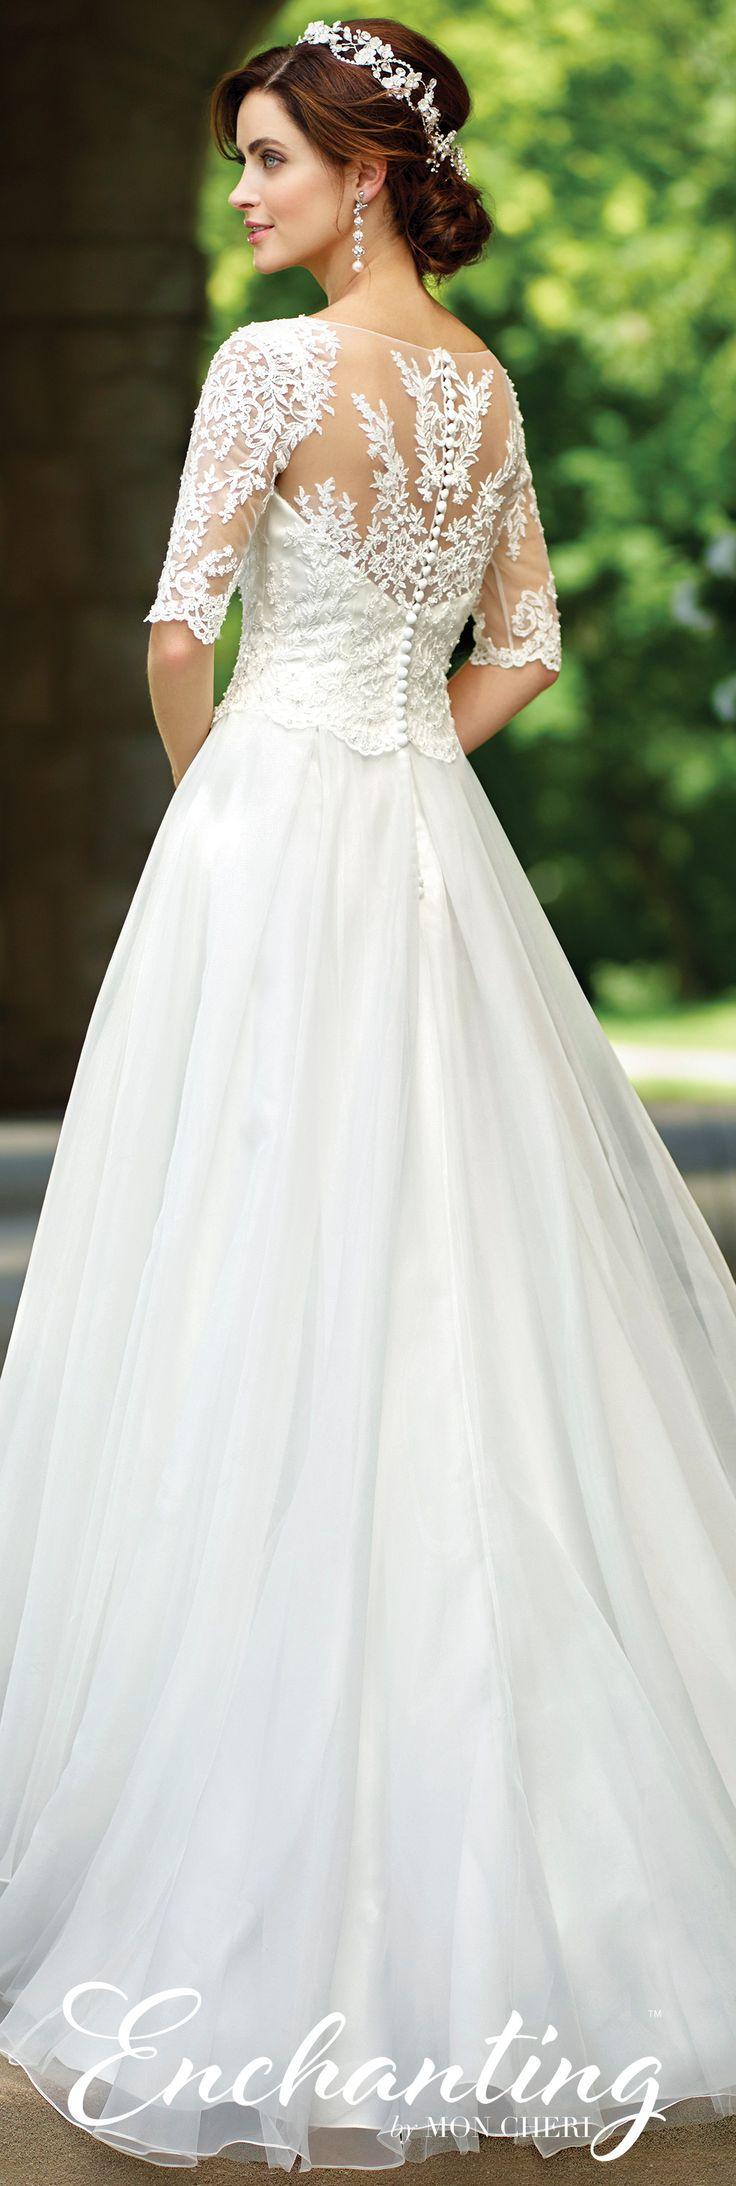 Hochzeit - Organza A-Line Wedding Dress- 117177- Enchanting By Mon Cheri